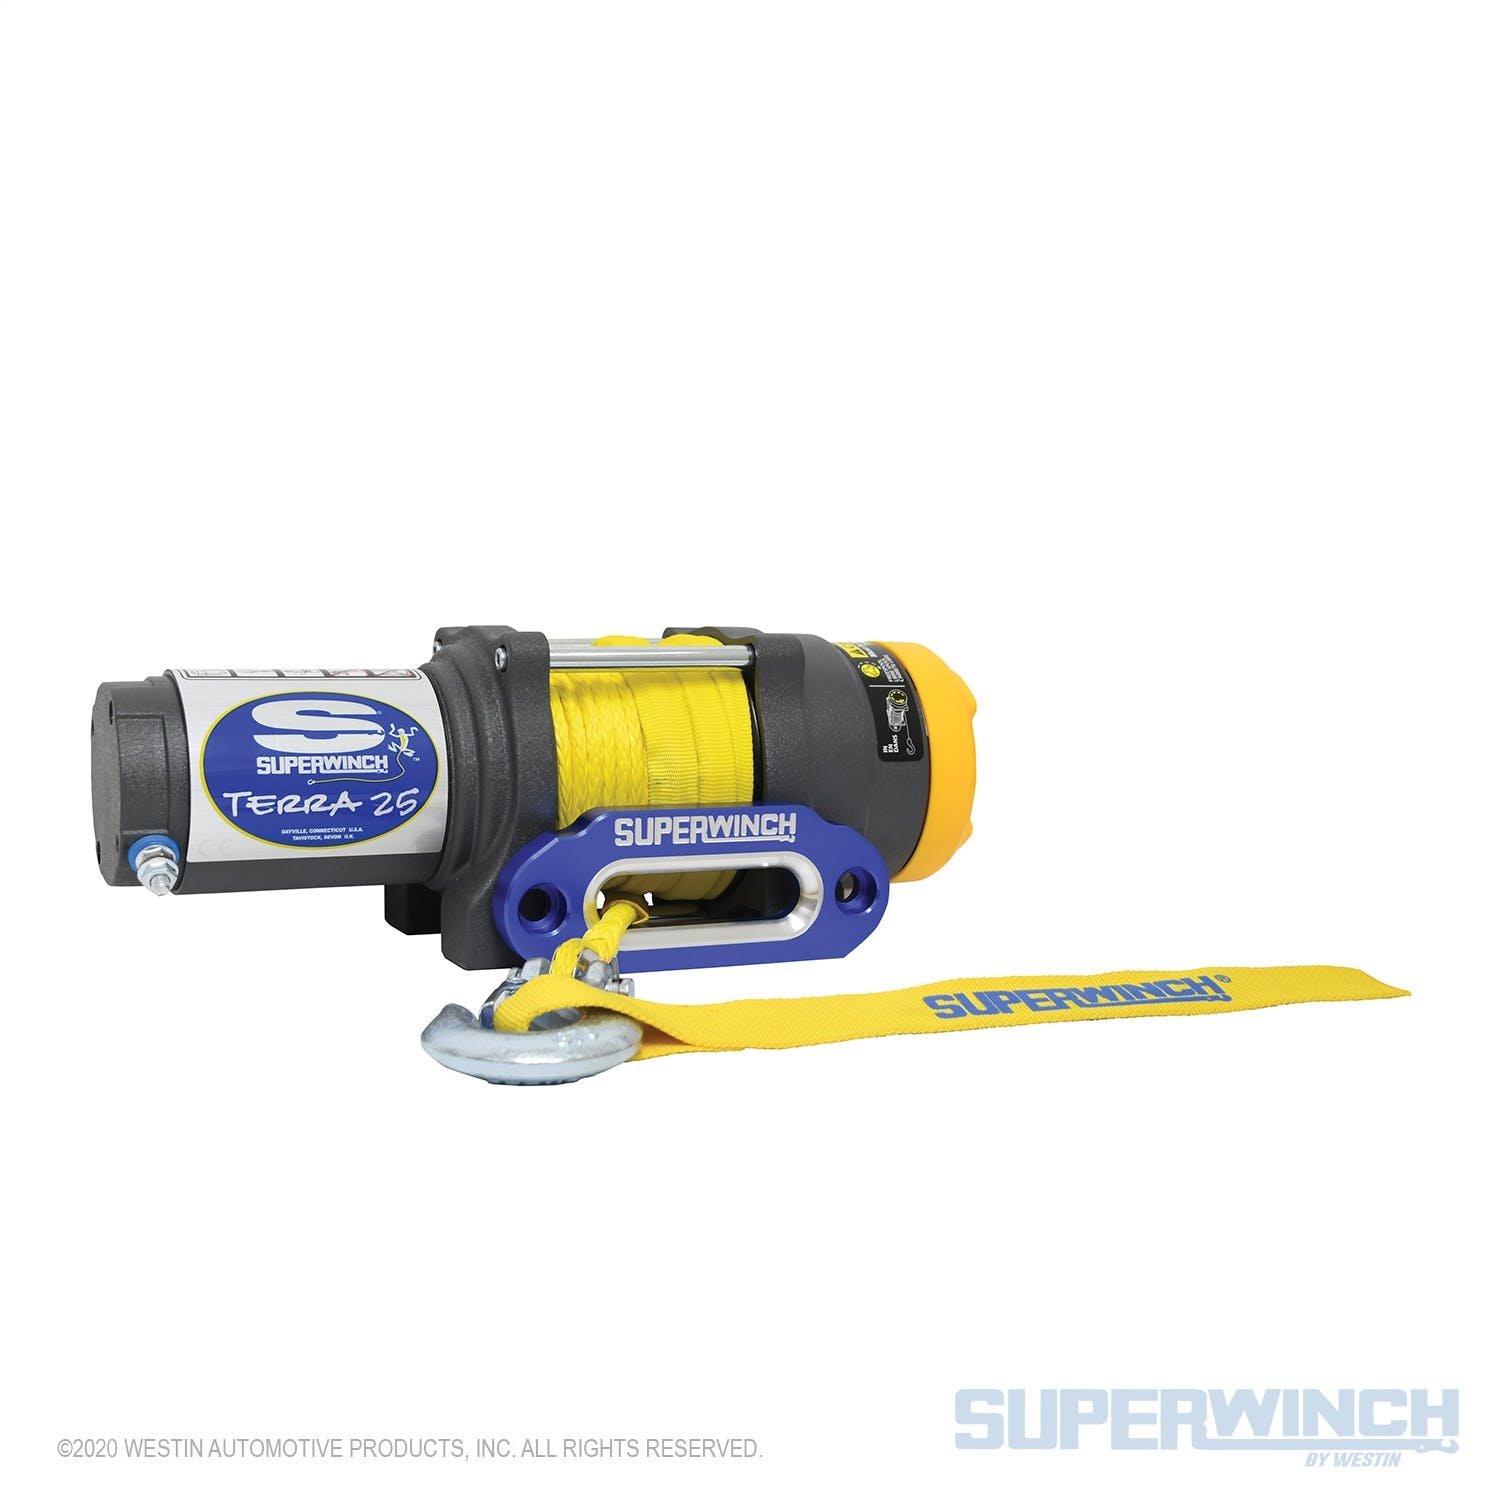 Superwinch 1125230 Terra 25SR Winch